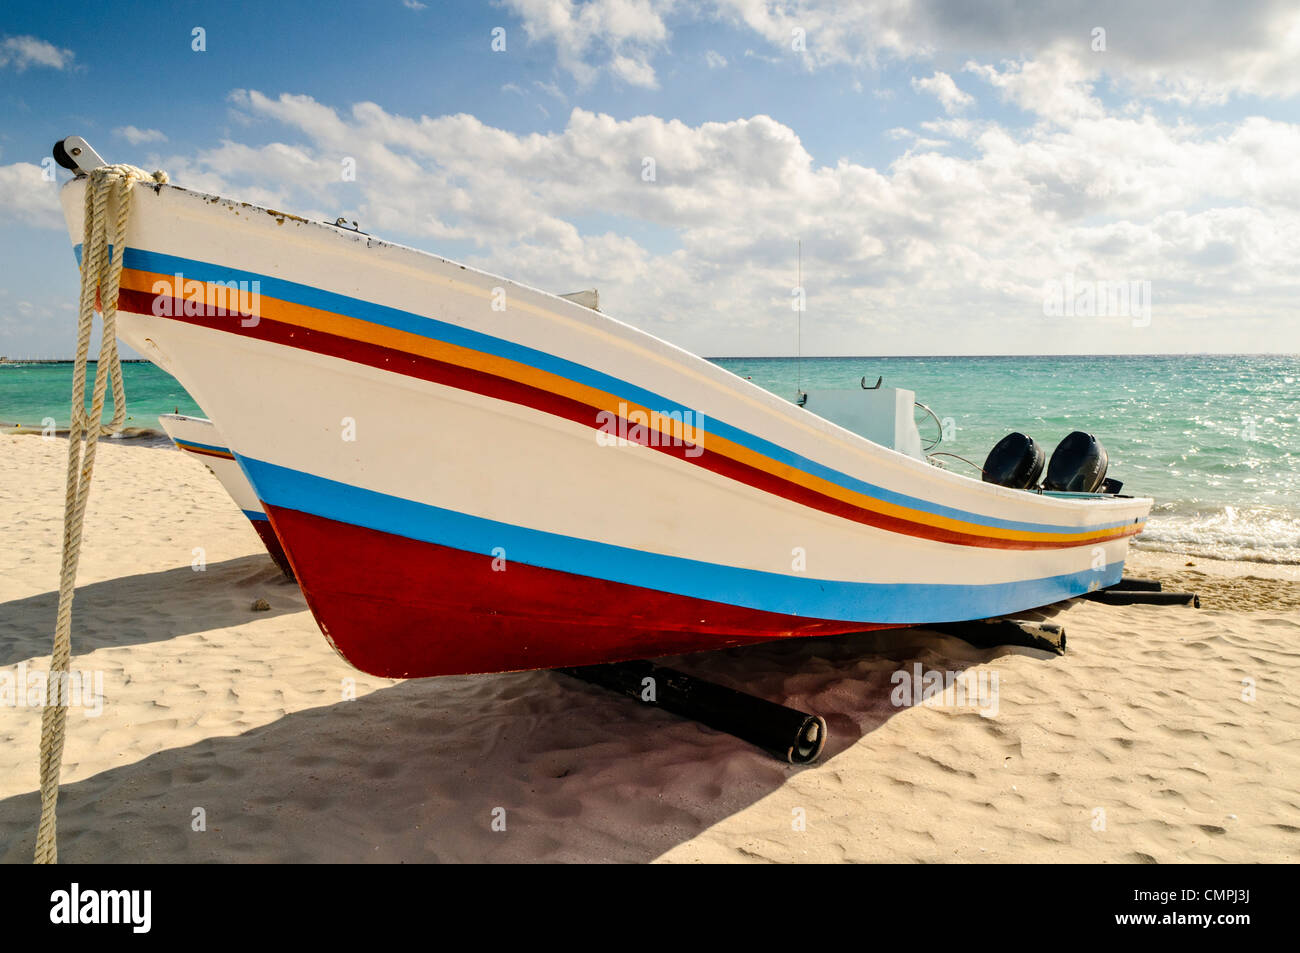 Eine bunt bemalte Boot hochgezogen am Sandstrand in Playa del Carmen auf der mexikanischen Halbinsel Yucatan mit teilweise bewölkter Himmel im Hintergrund. Stockfoto